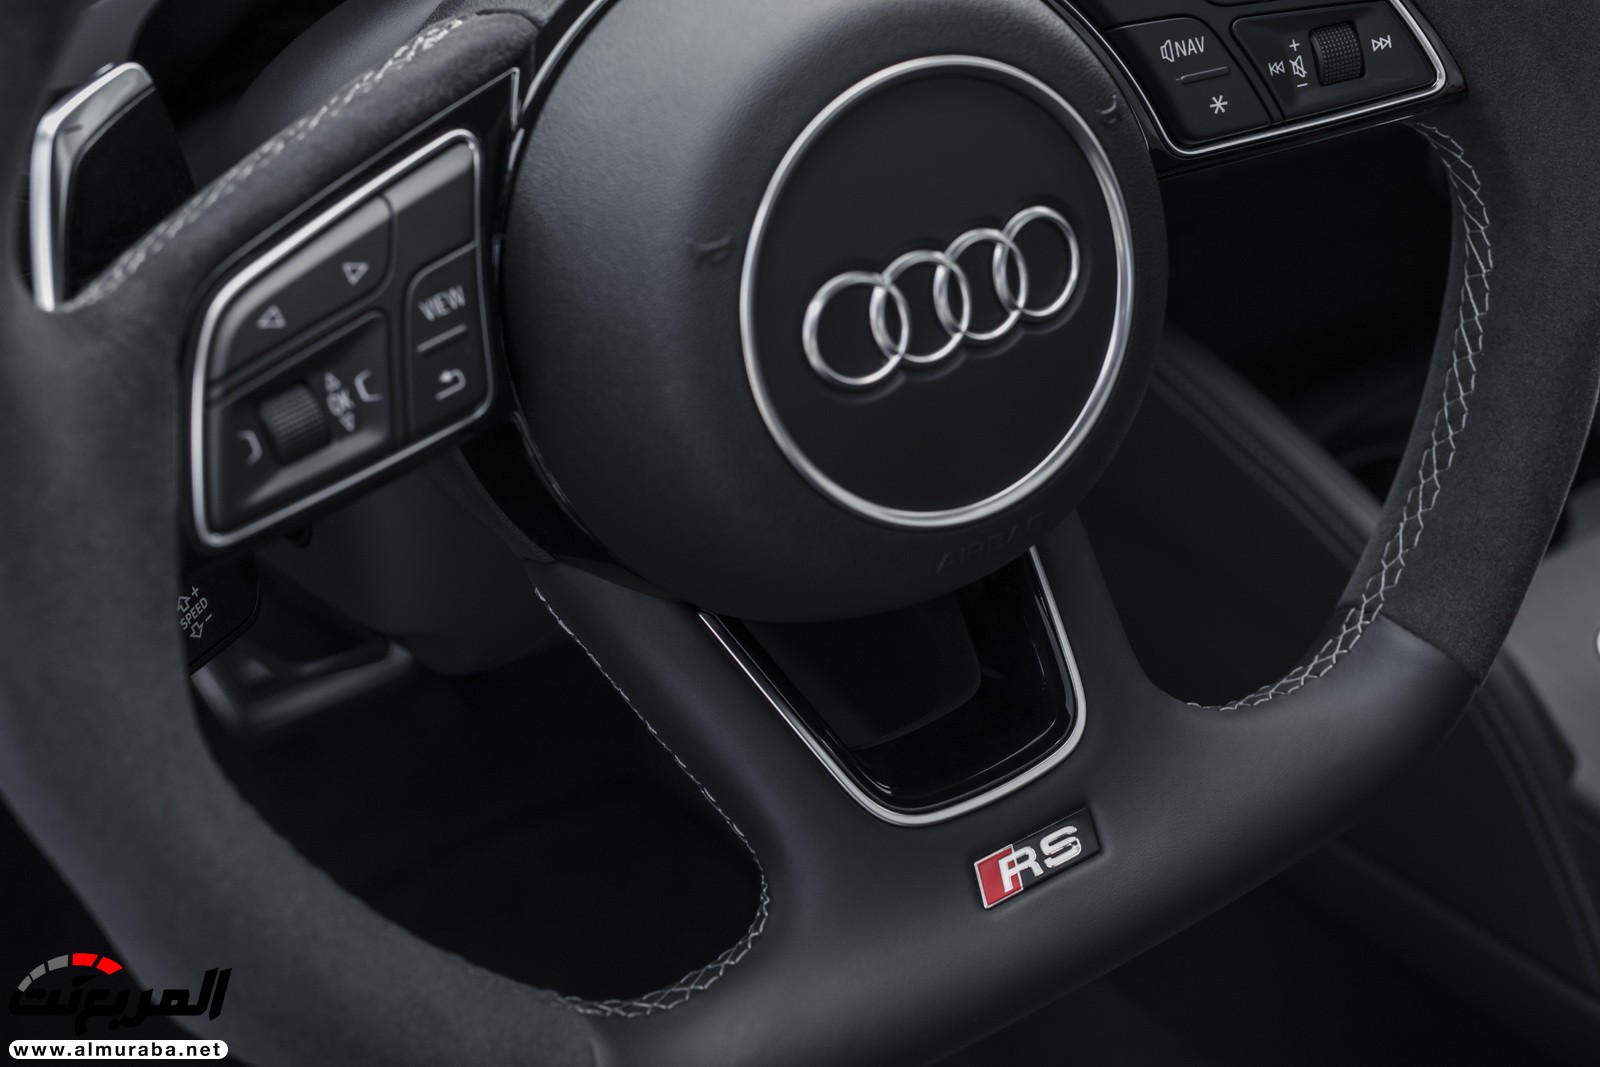 "أودي" تكشف عن RS3 الجديدة كليا 2018 بقوة 395 حصان Audi 79